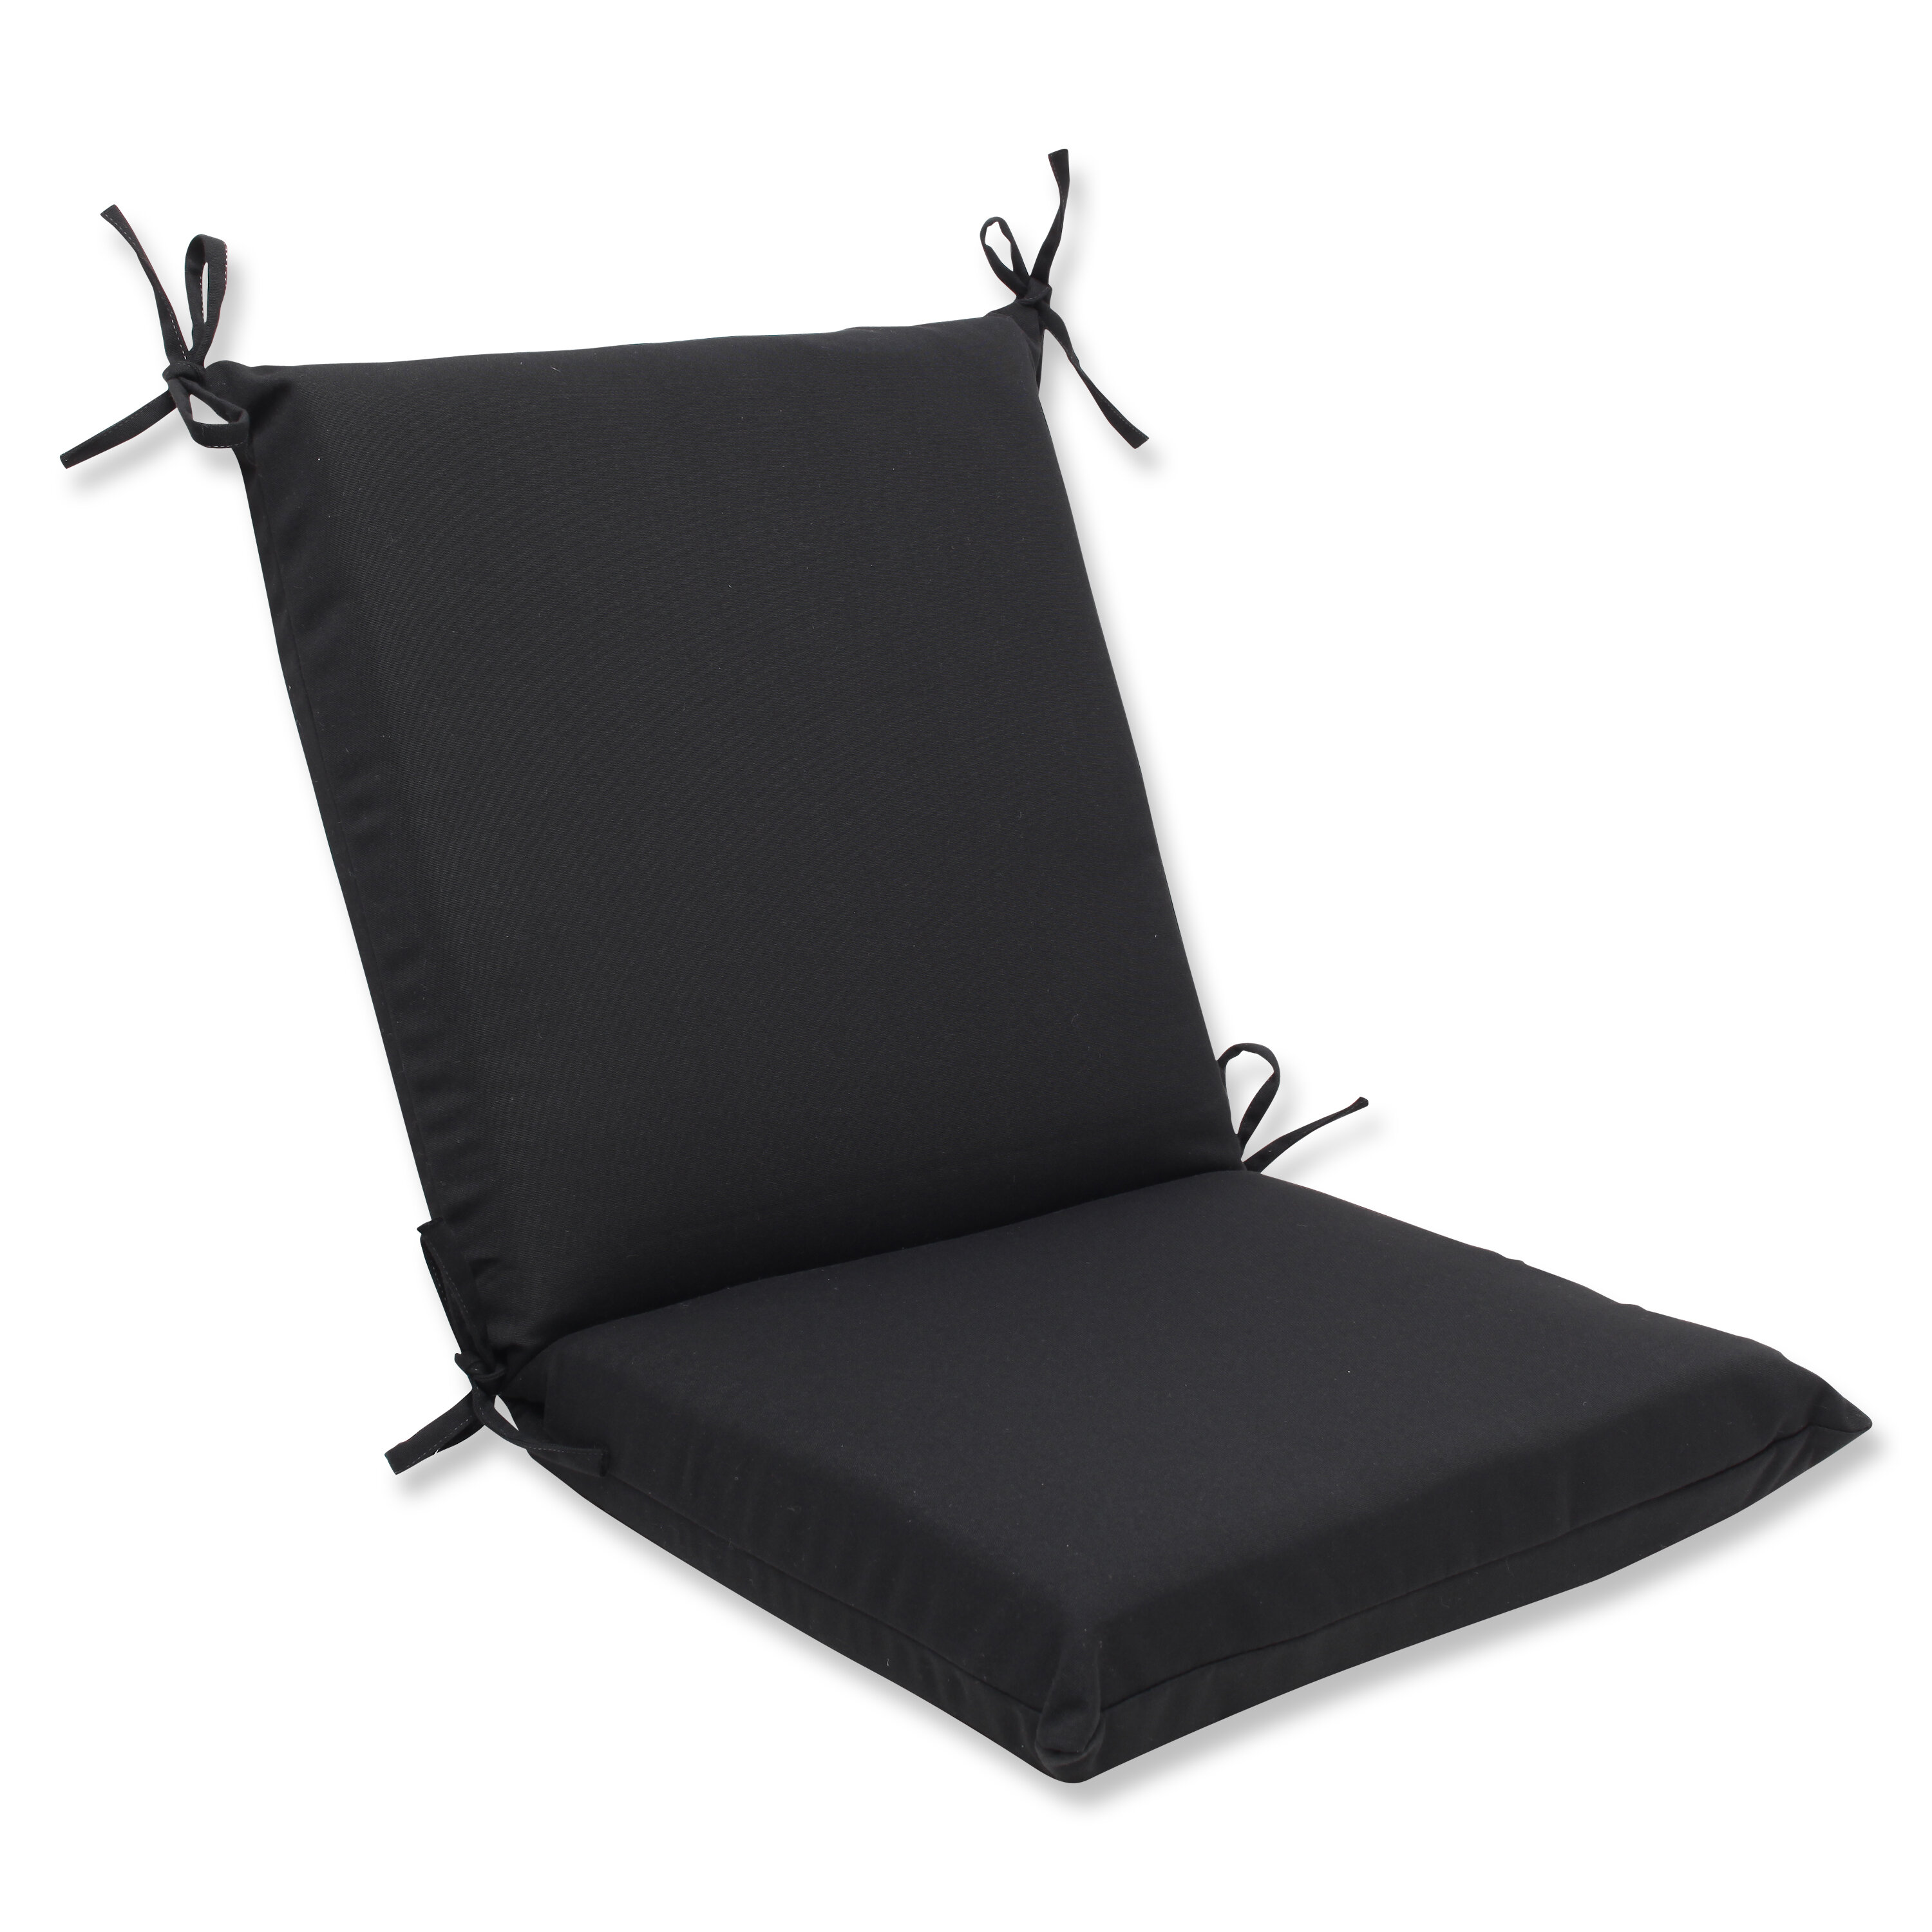 Eastview Indoor Outdoor Sunbrella Lounge Chair Cushion Reviews Joss Main